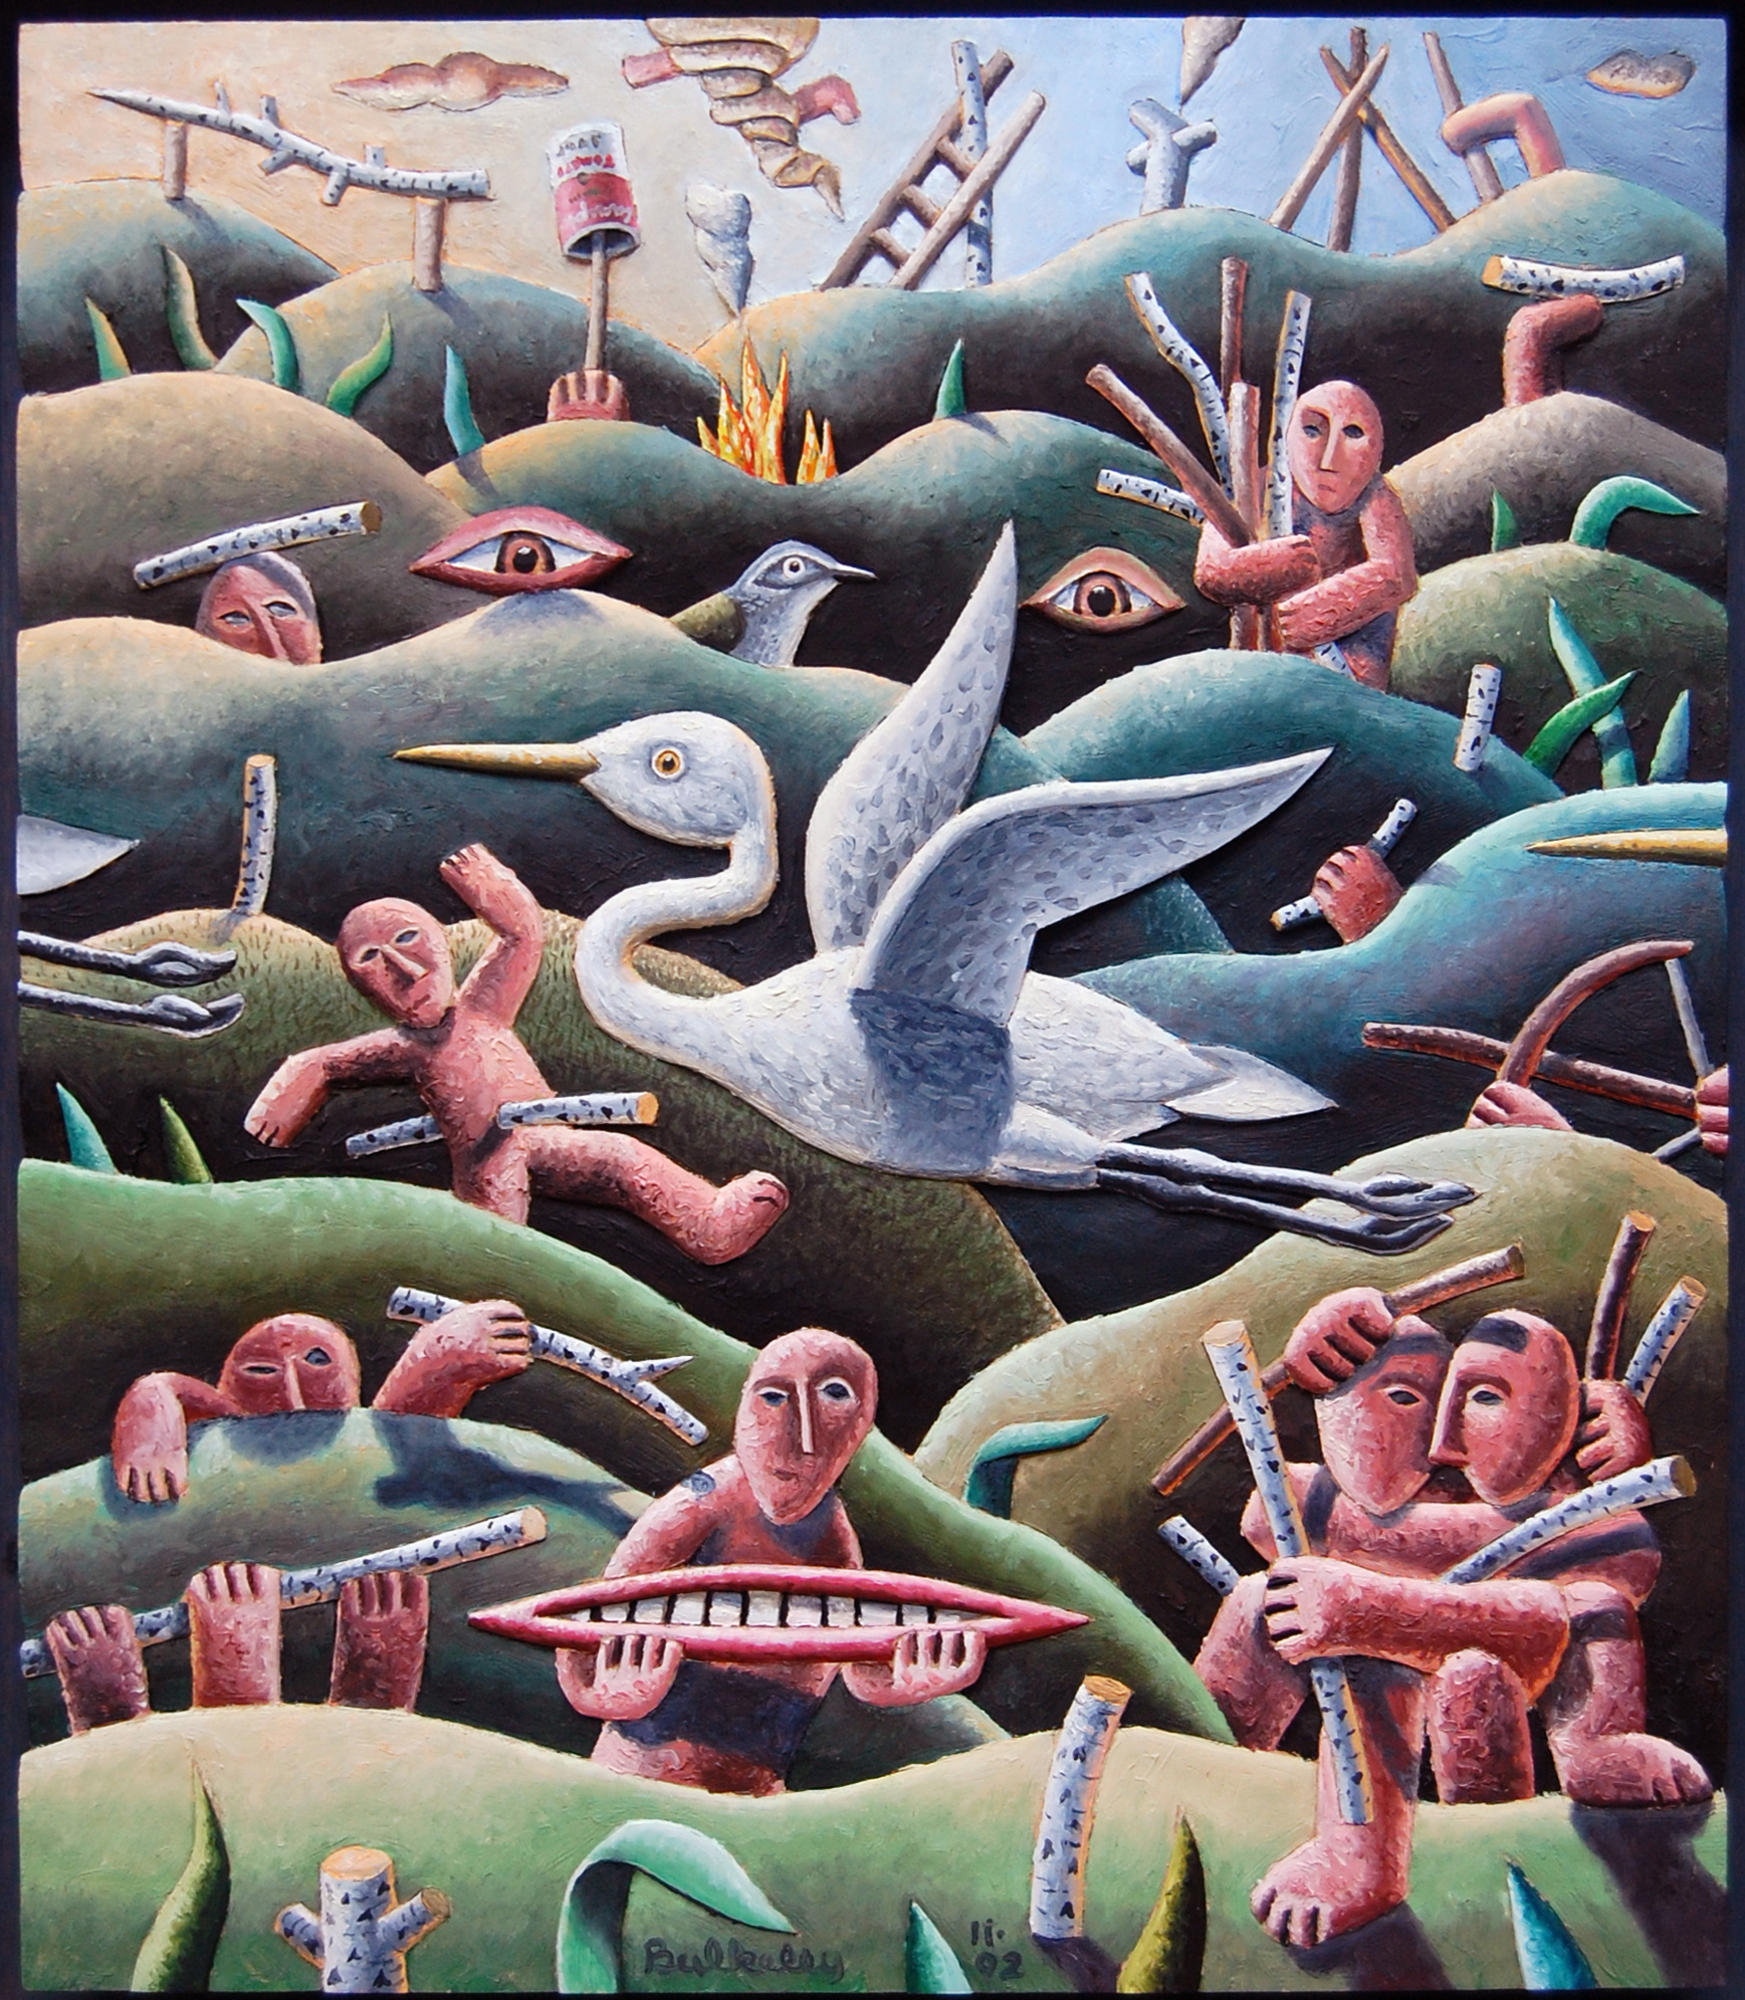 Common Egret